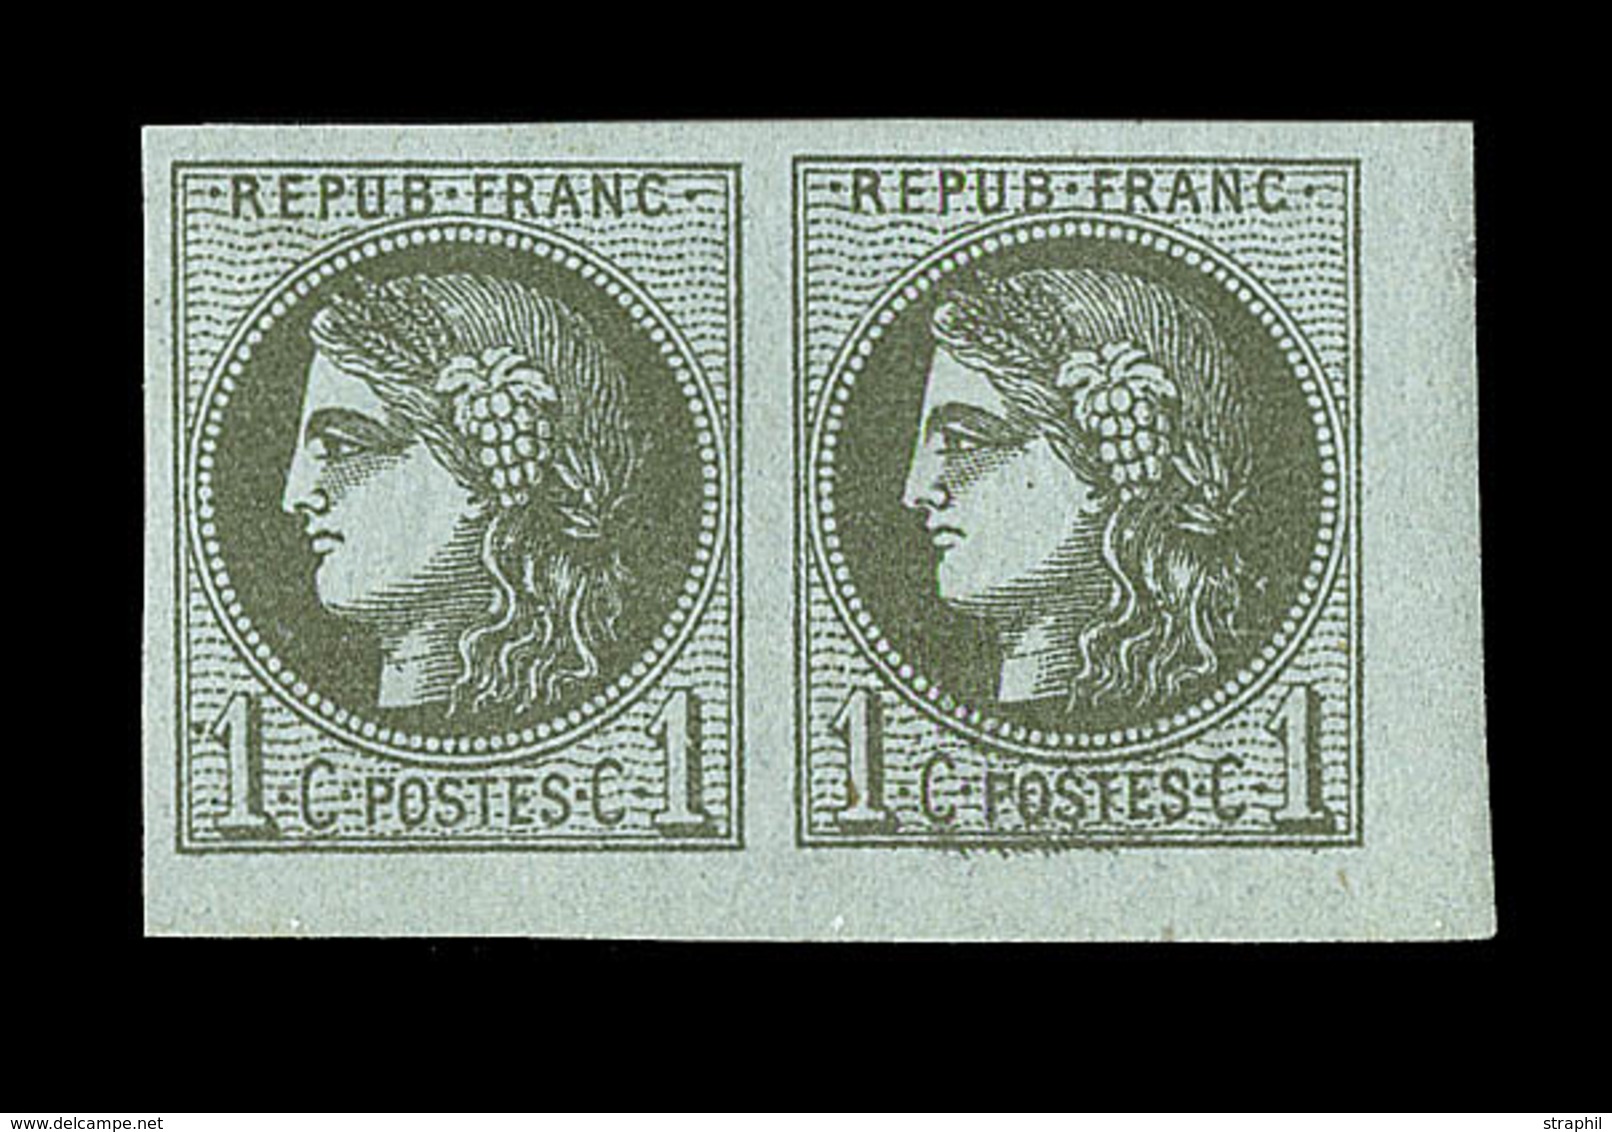 * EMISSION DE BORDEAUX - * - N°39C - Paire - CdF - Charn. Légère - Signé - TB/SUP - 1870 Ausgabe Bordeaux